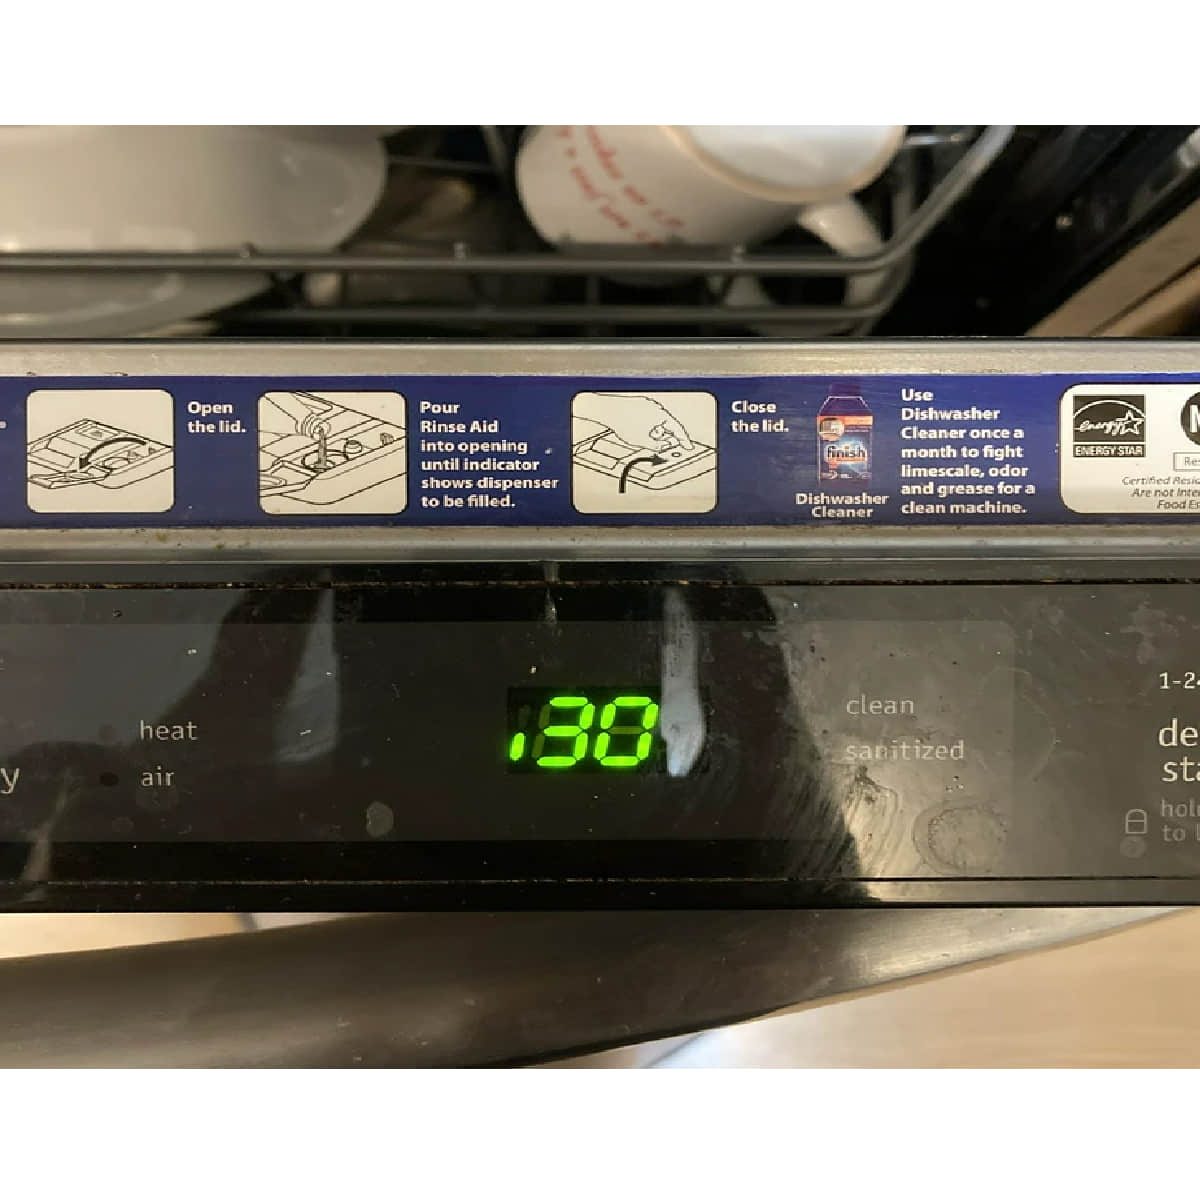 Frigidaire dishwasher code 30